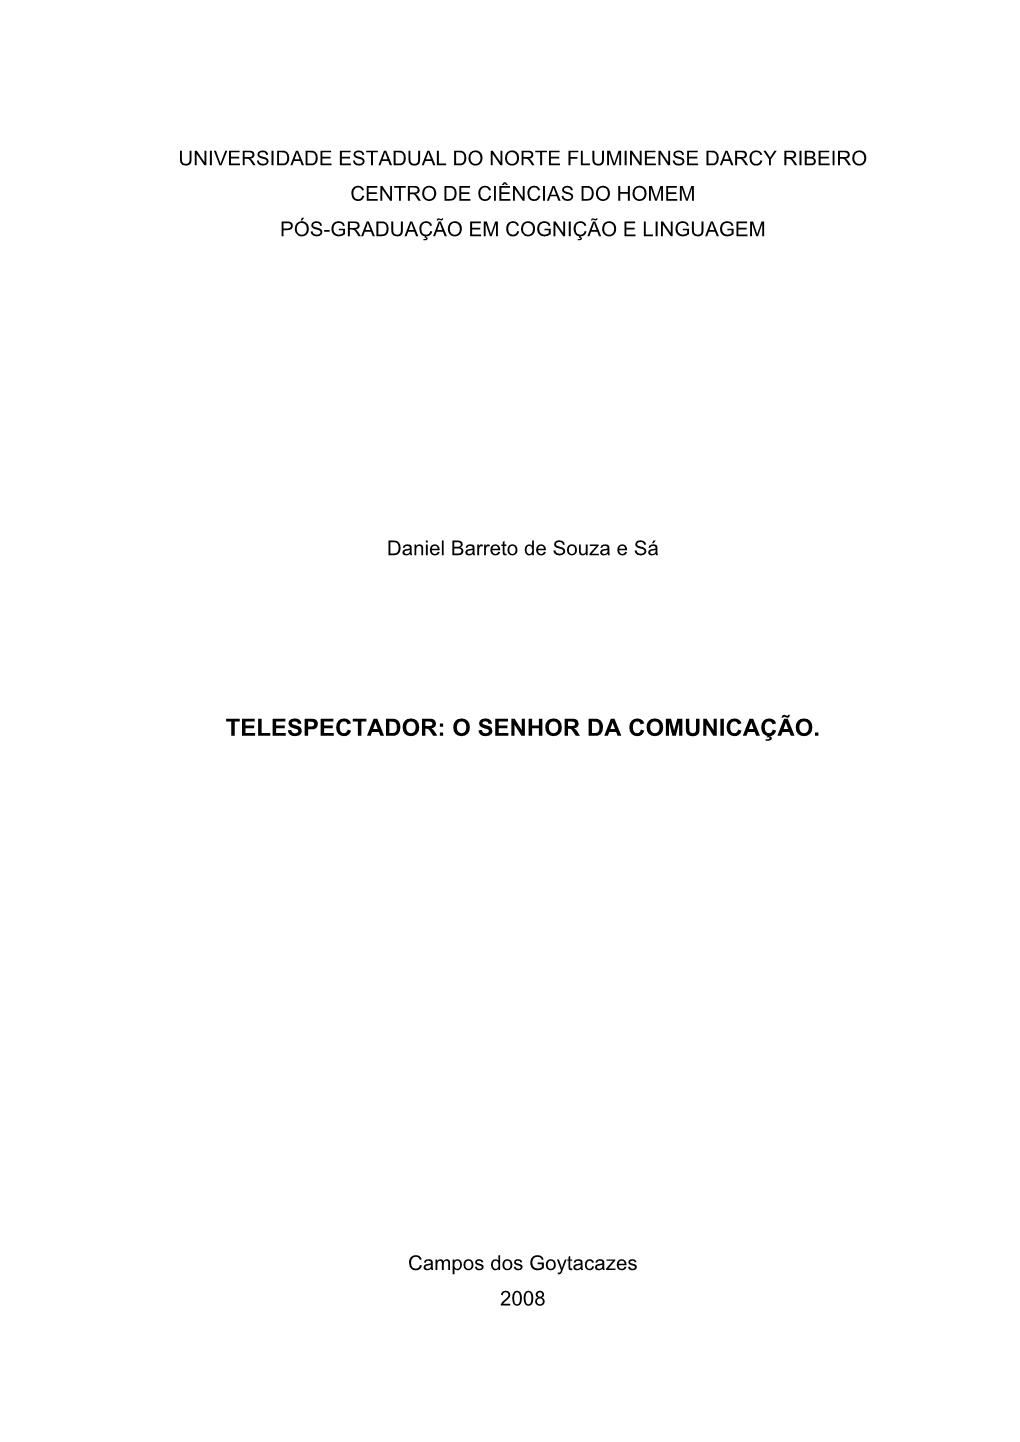 Universidade Estadual Do Norte Fluminense Darcy Ribeiro Centro De Ciências Do Homem Pós-Graduação Em Cognição E Linguagem